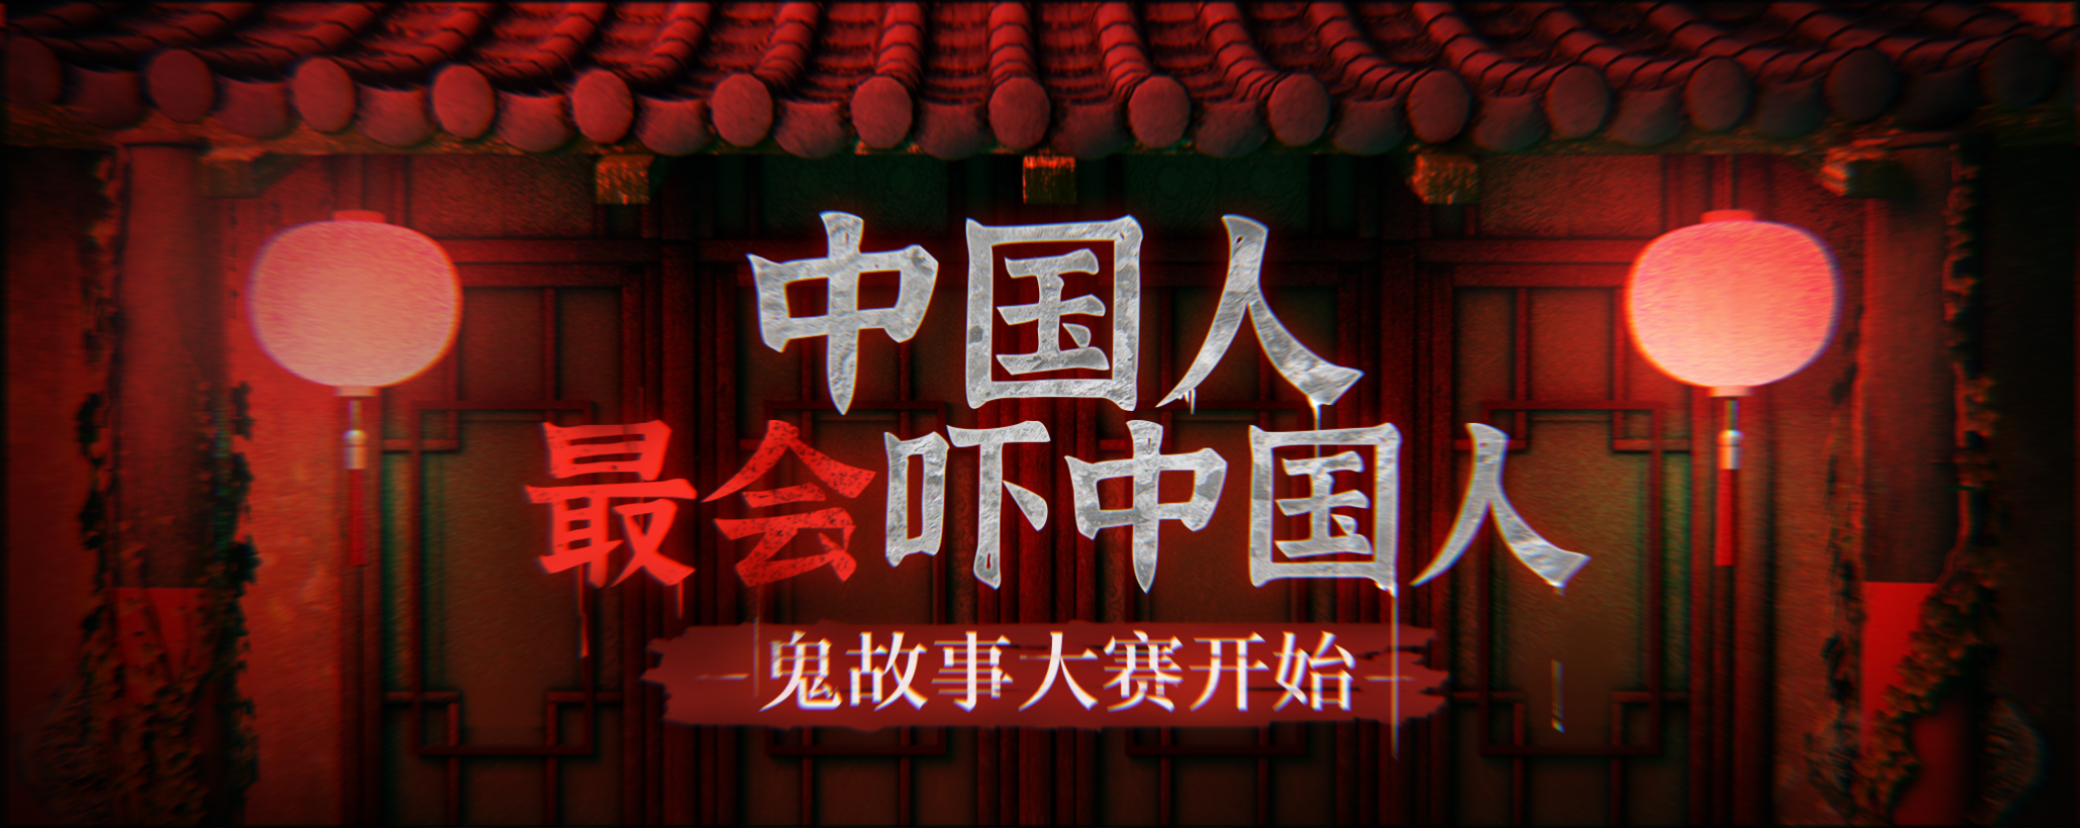 中國人最會嚇中國人之 鬼故事大賽 開啟|紙嫁衣4紅絲纏 - 第1張